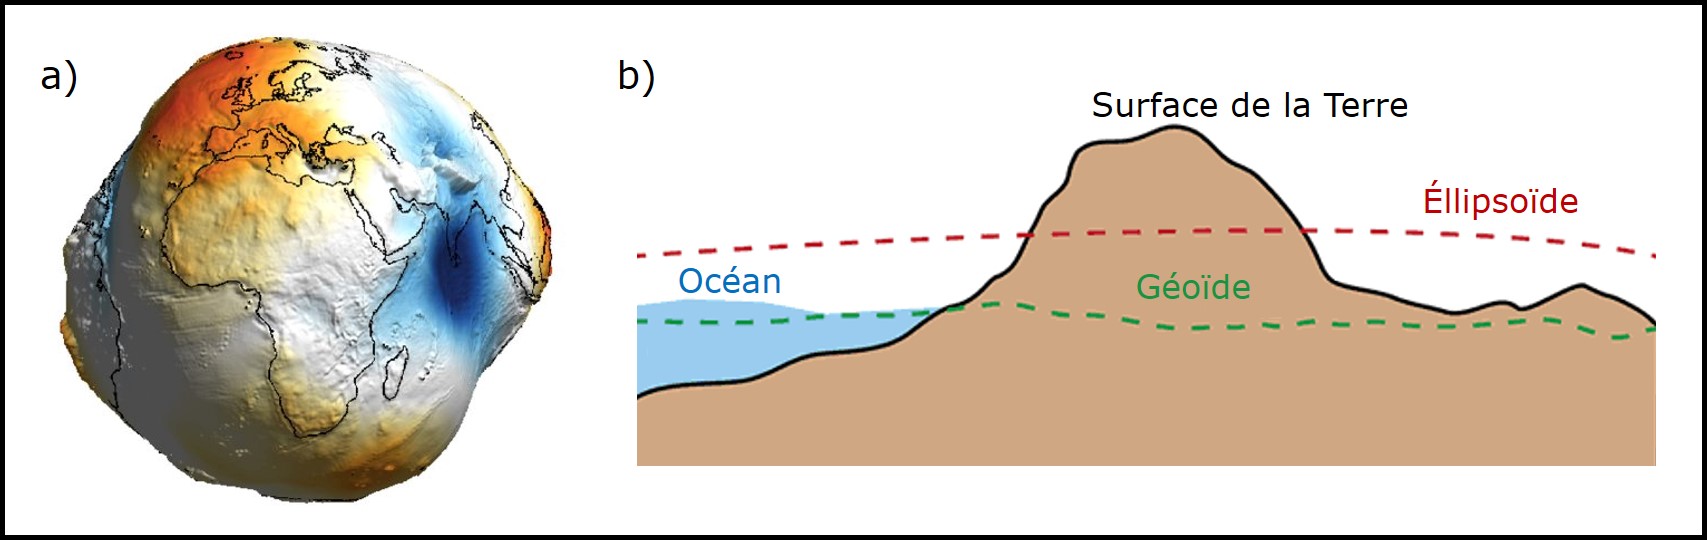 Le géoïde. a) La forme irrégulière du géoïde avec des bosses et des creux créés par le champ gravitationnel agissant de façon inégale sur la Terre (source : Bezdek et Sebera 2013). b) Le géoïde coïncide avec le niveau moyen des océans et se distingue de l’ellipsoïde (figure adaptée de [USGS](earthquake.usgs.gov)).